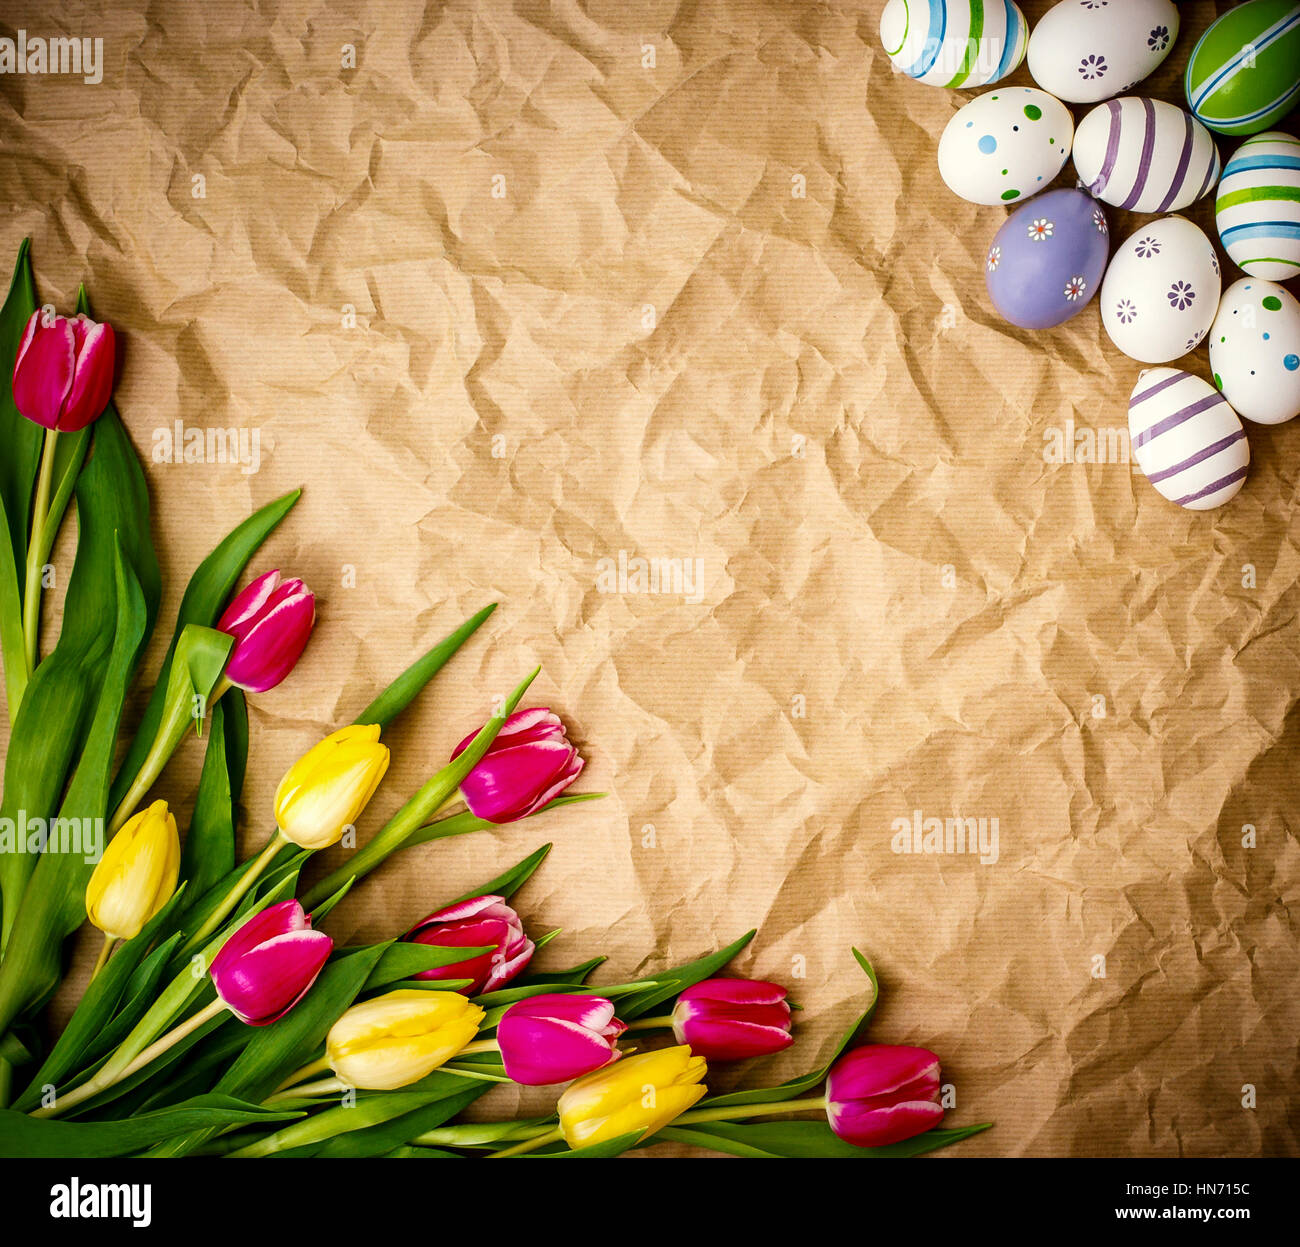 Uovo orientale, tulipani su marrone crumpled carta di avvolgimento, vista dall'alto Foto Stock